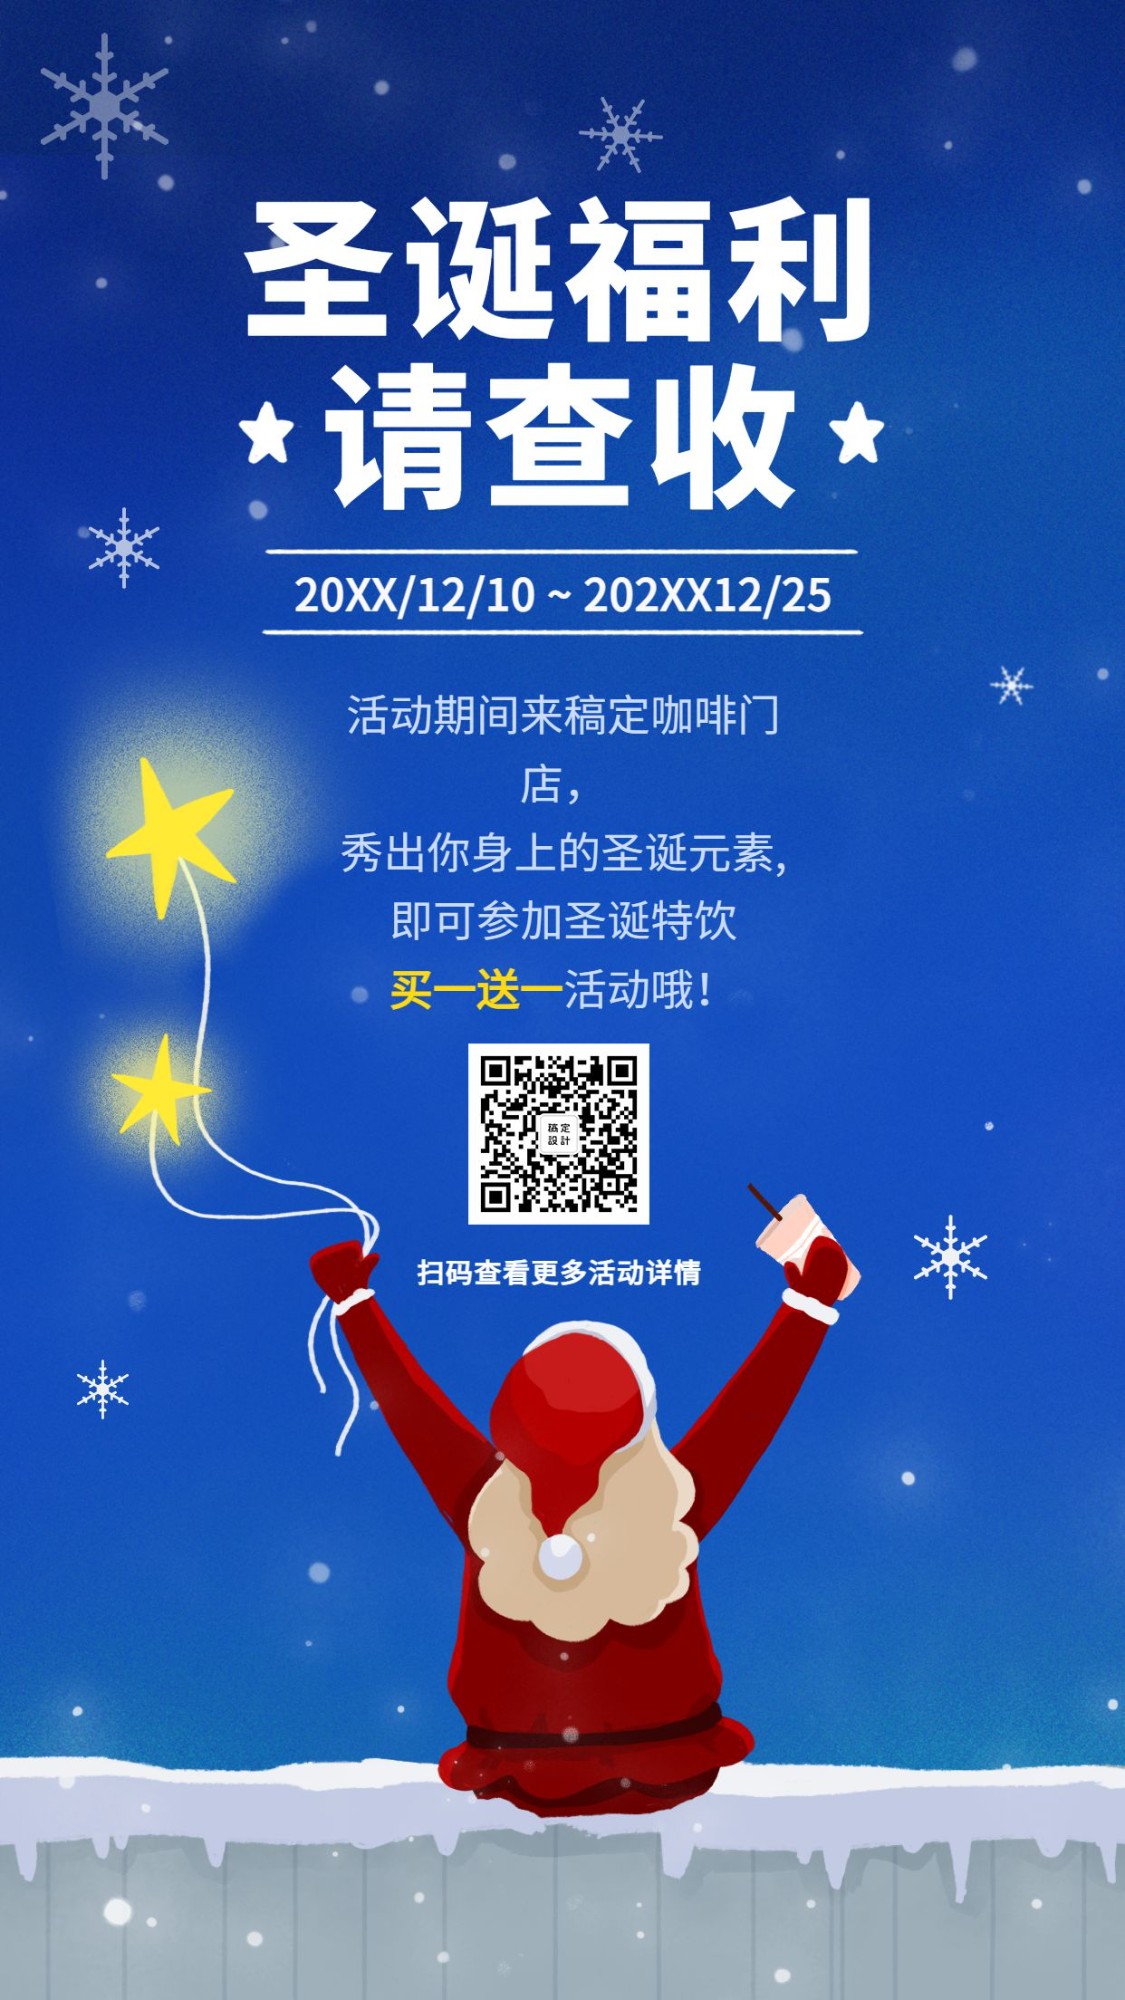 圣诞节平安夜活动促销福利优惠手绘可爱手机海报